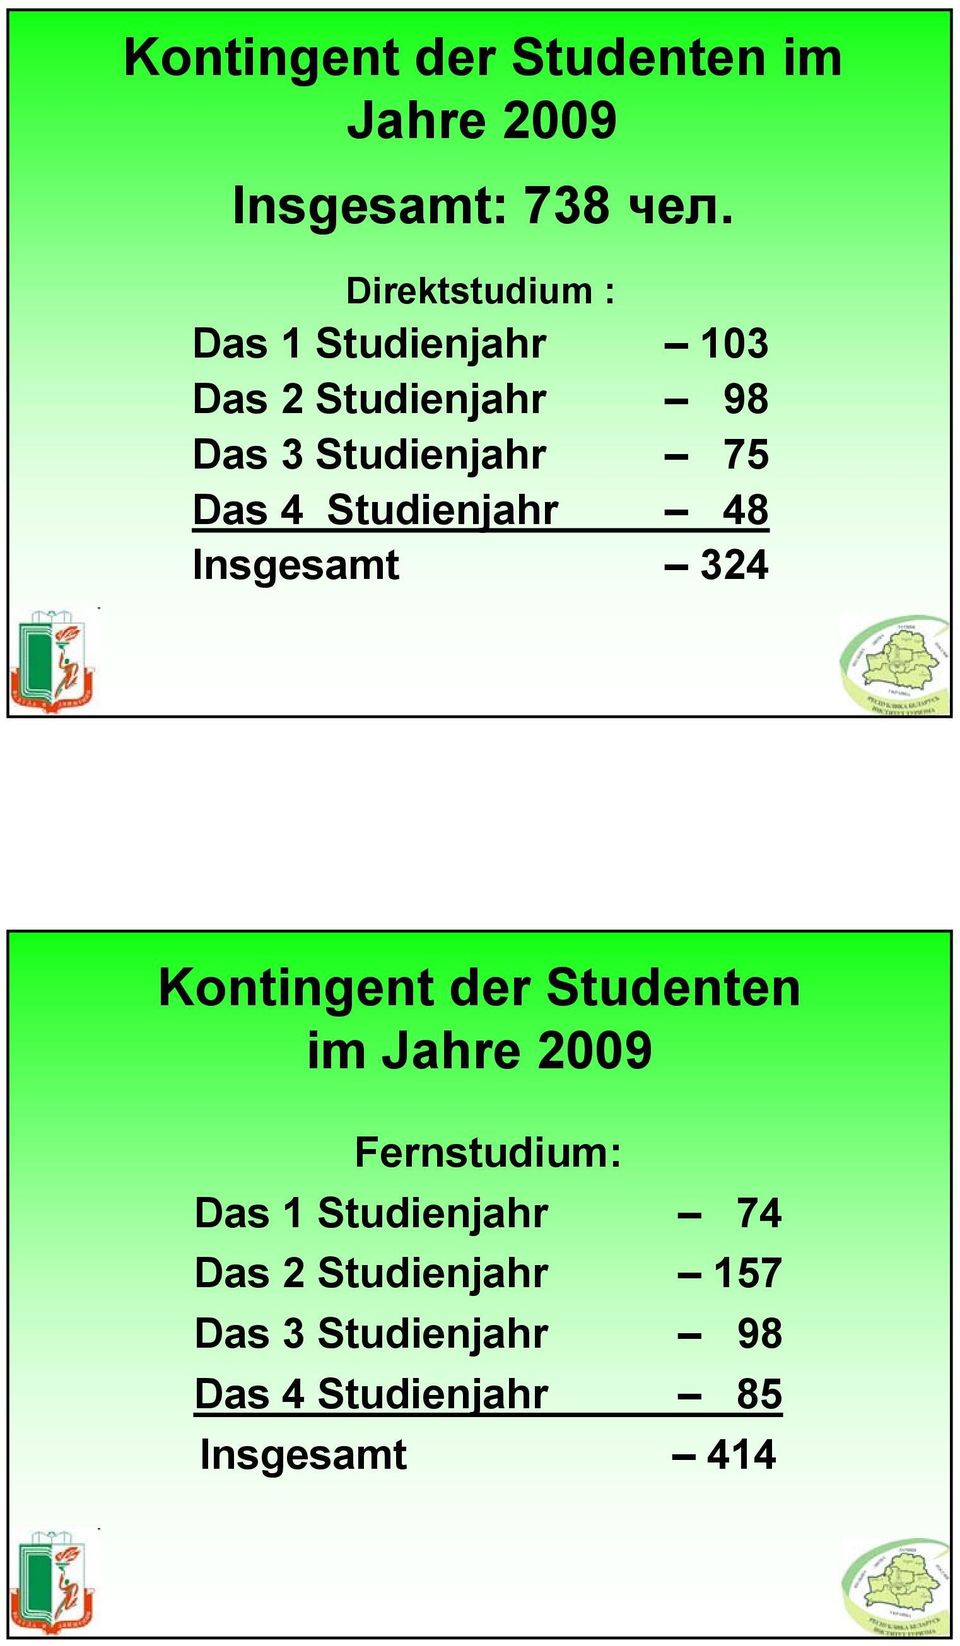 Das 4 Studienjahr 48 Insgesamt 324 Kontingent der Studenten im Jahre 2009